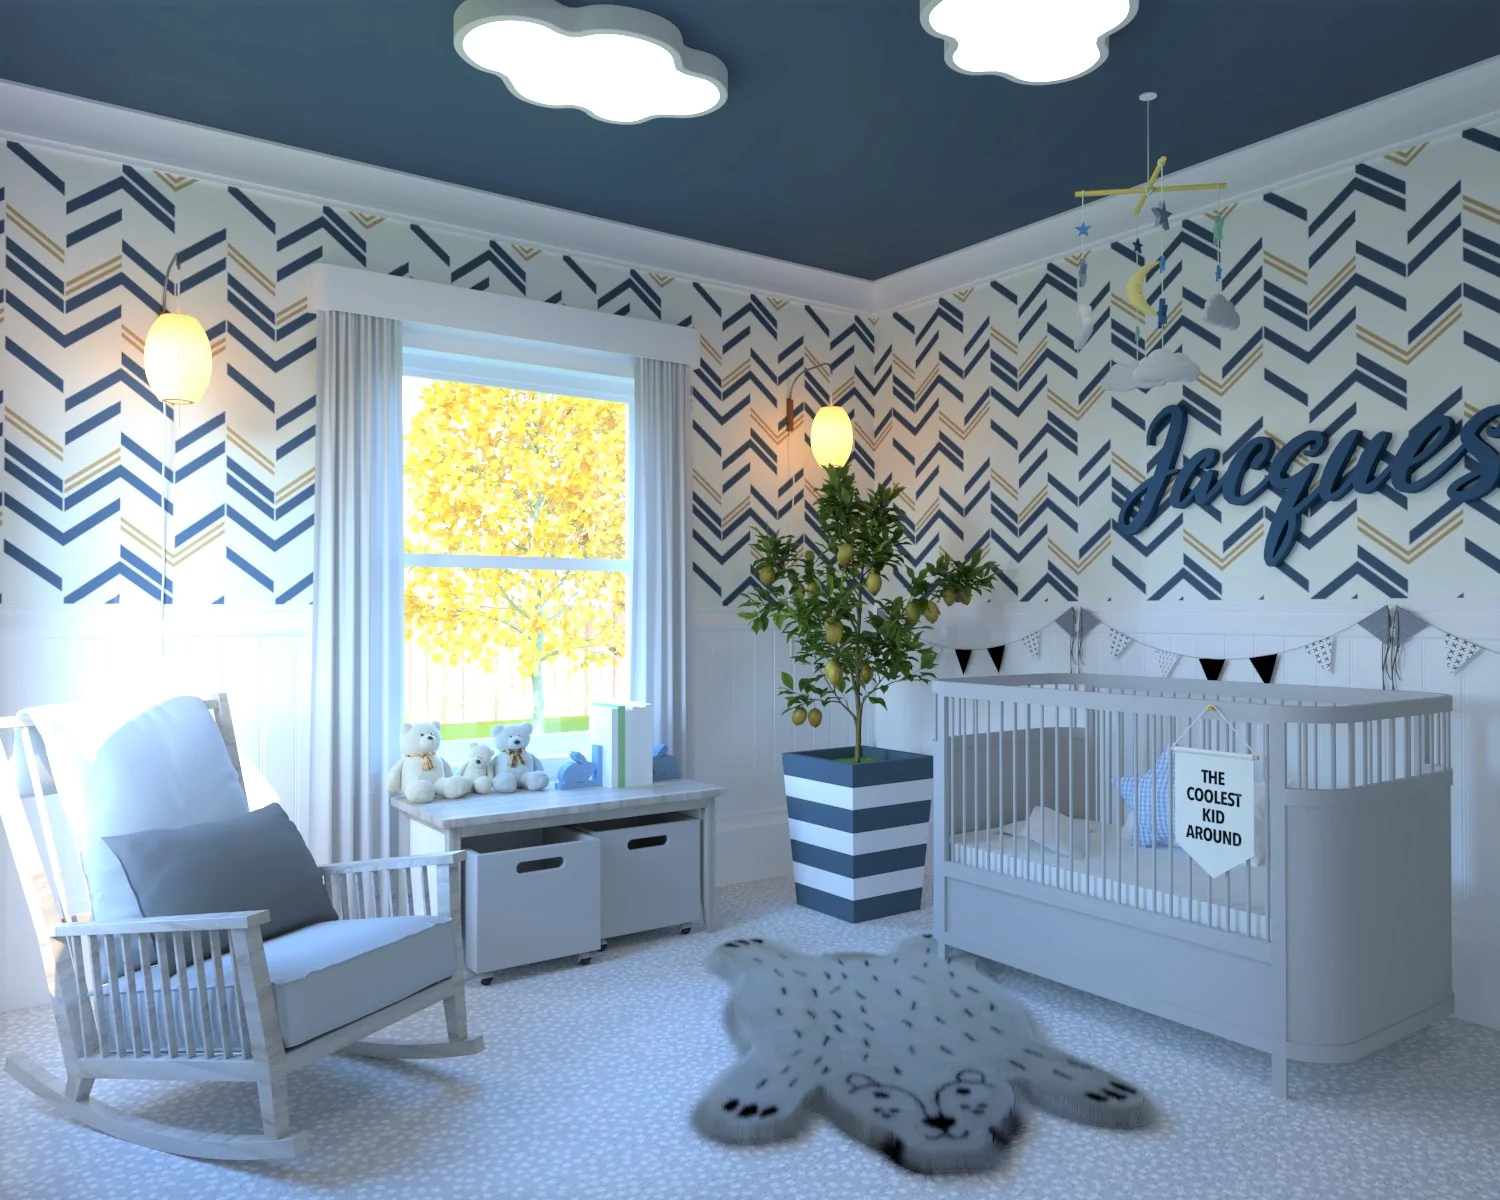 Trang trí phòng cho bé trai màu xanh tạo nên không gian dễ chịu, ấm cúng